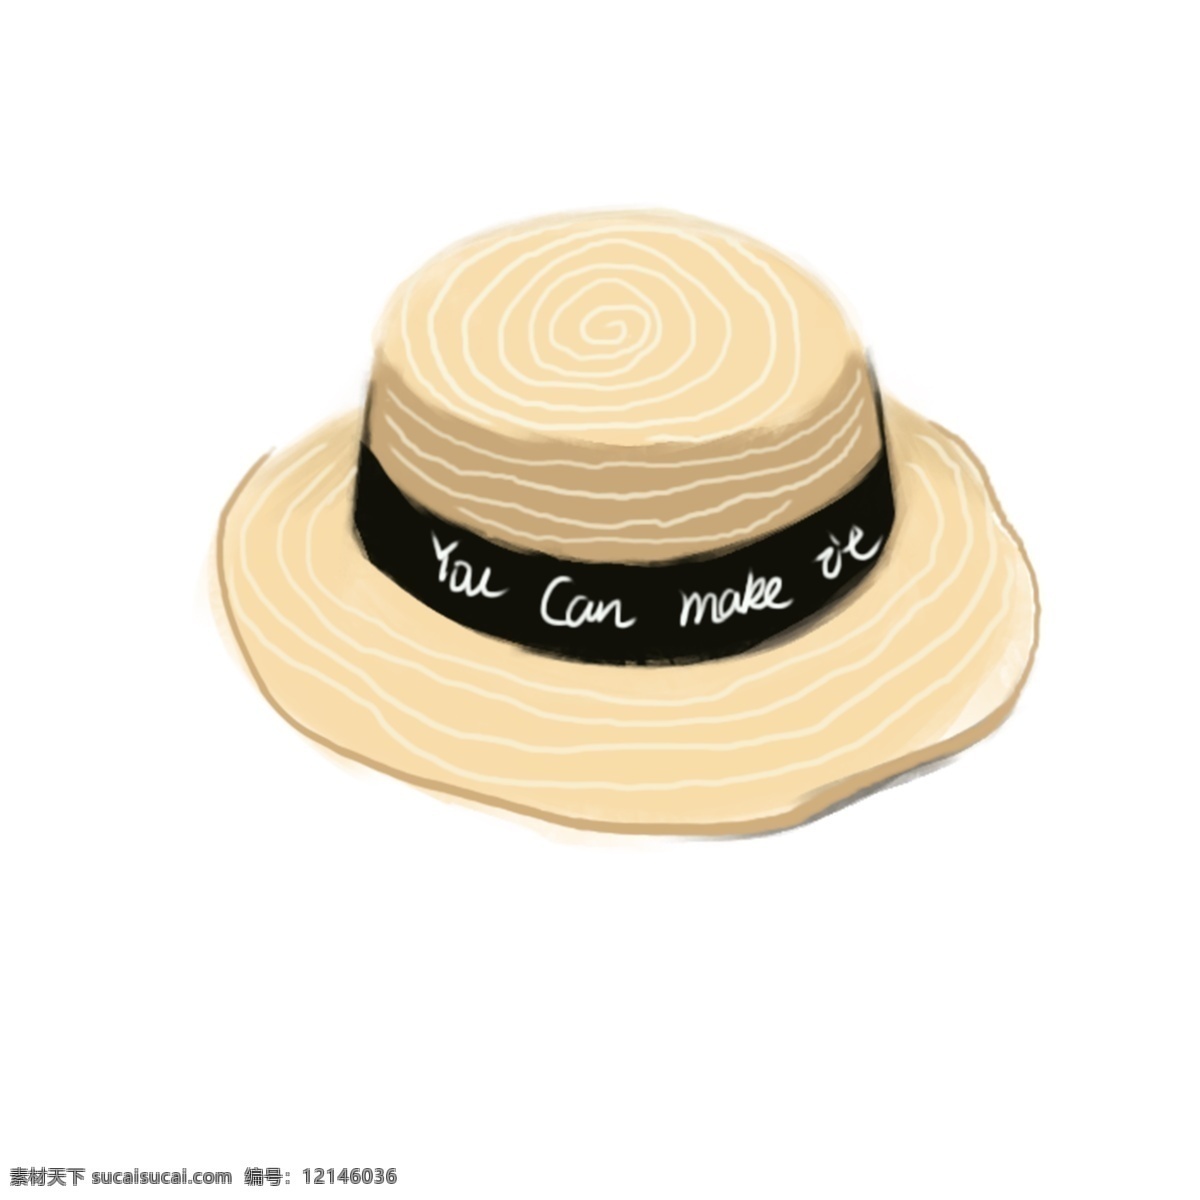 黄色 沙滩 草帽 休闲 帽子 元素 褐色 简约 可爱 性感 遮阳帽 沙滩帽 女士帽子 女性帽子 优雅 时尚 帽子配饰 帽子图案 帽子装饰